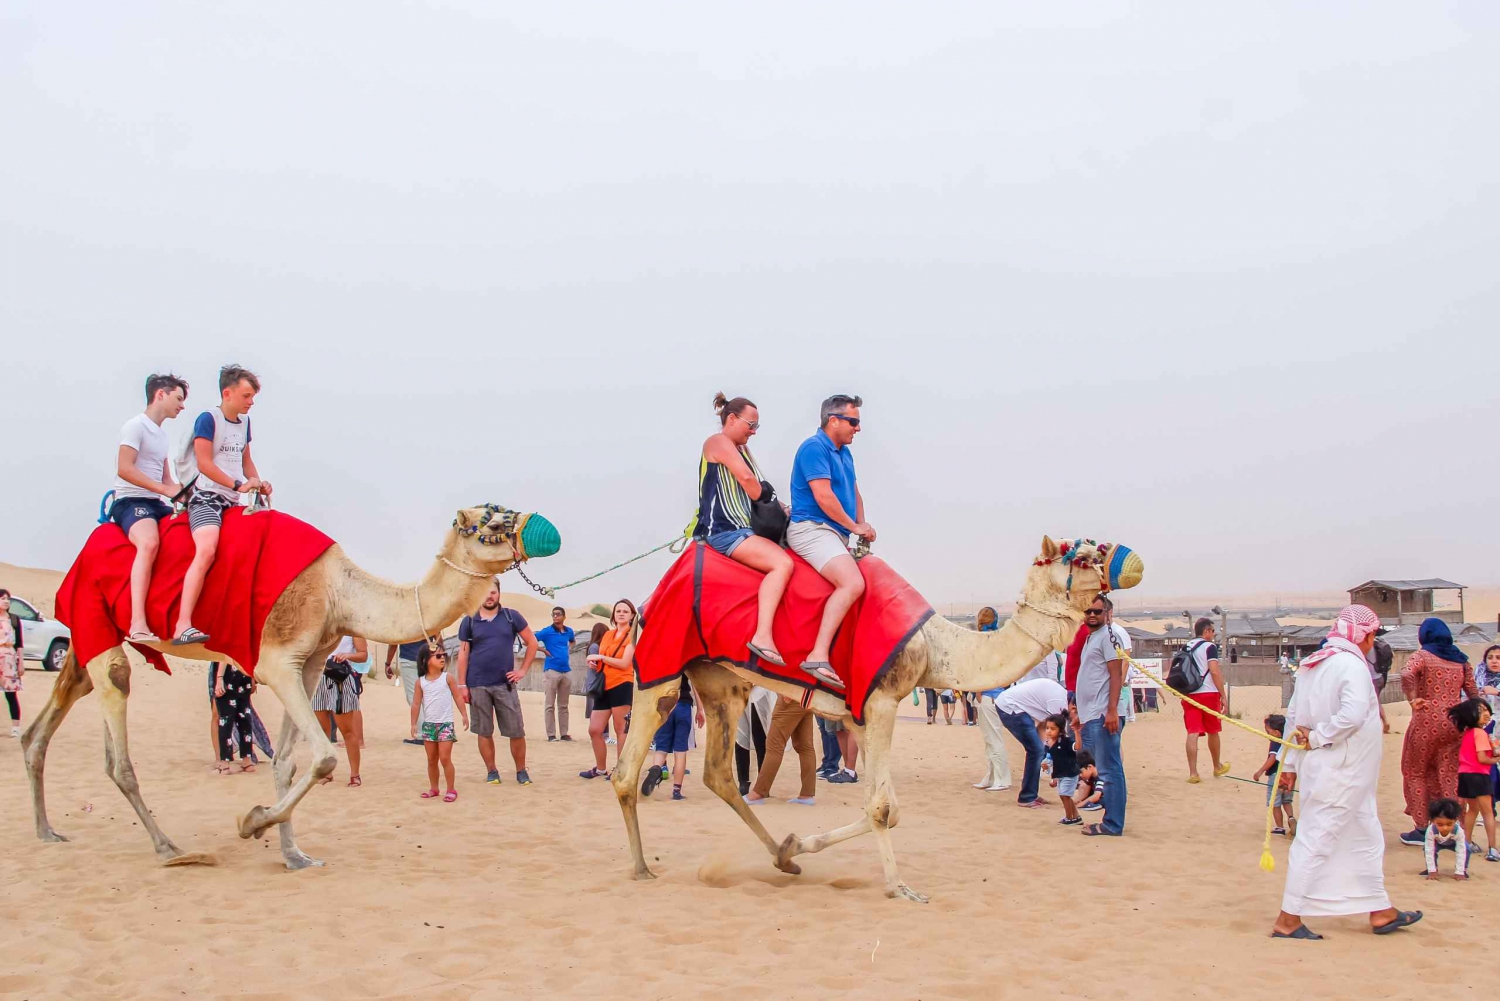 Dubai: kamelentrek in de woestijn bij zonsopgang met ontbijt